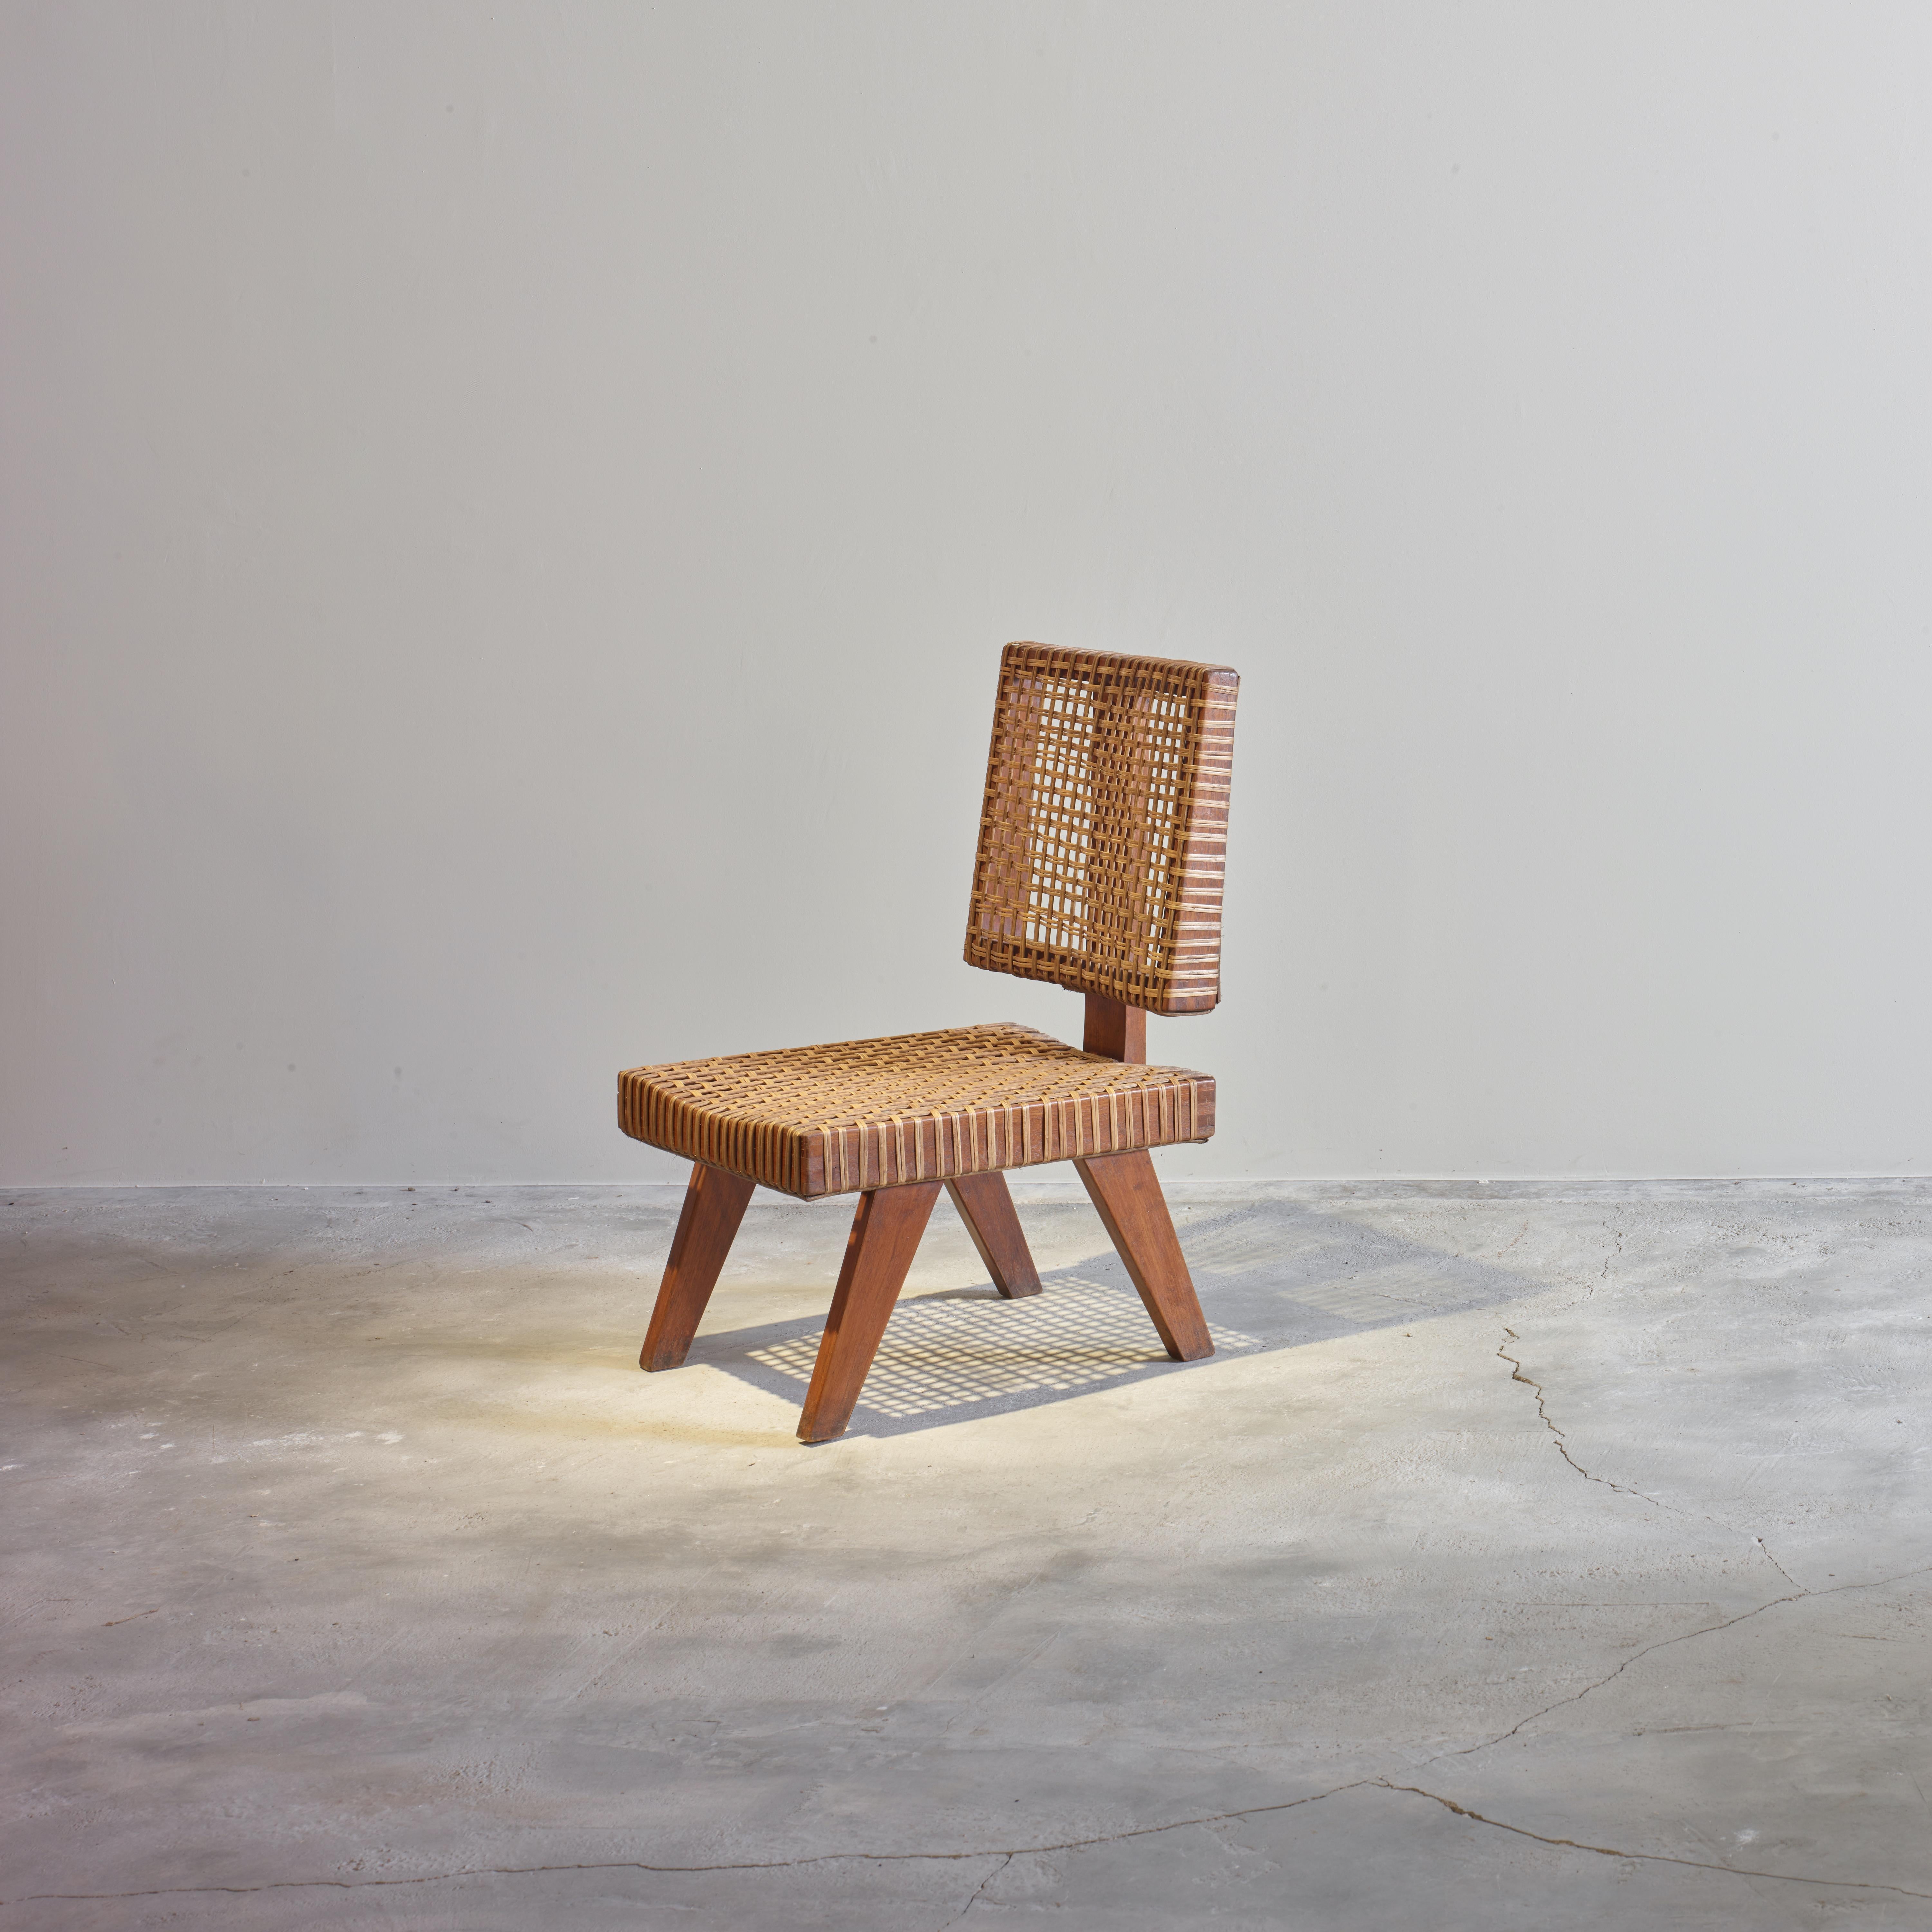 Cette chaise est une pièce de design très rare et emblématique. On connaît très peu d'exemples de ce modèle de chaise. Le design est brut dans sa simplicité, il montre une matière légèrement patinée. Il est assez rugueux et a une couleur magnifique.